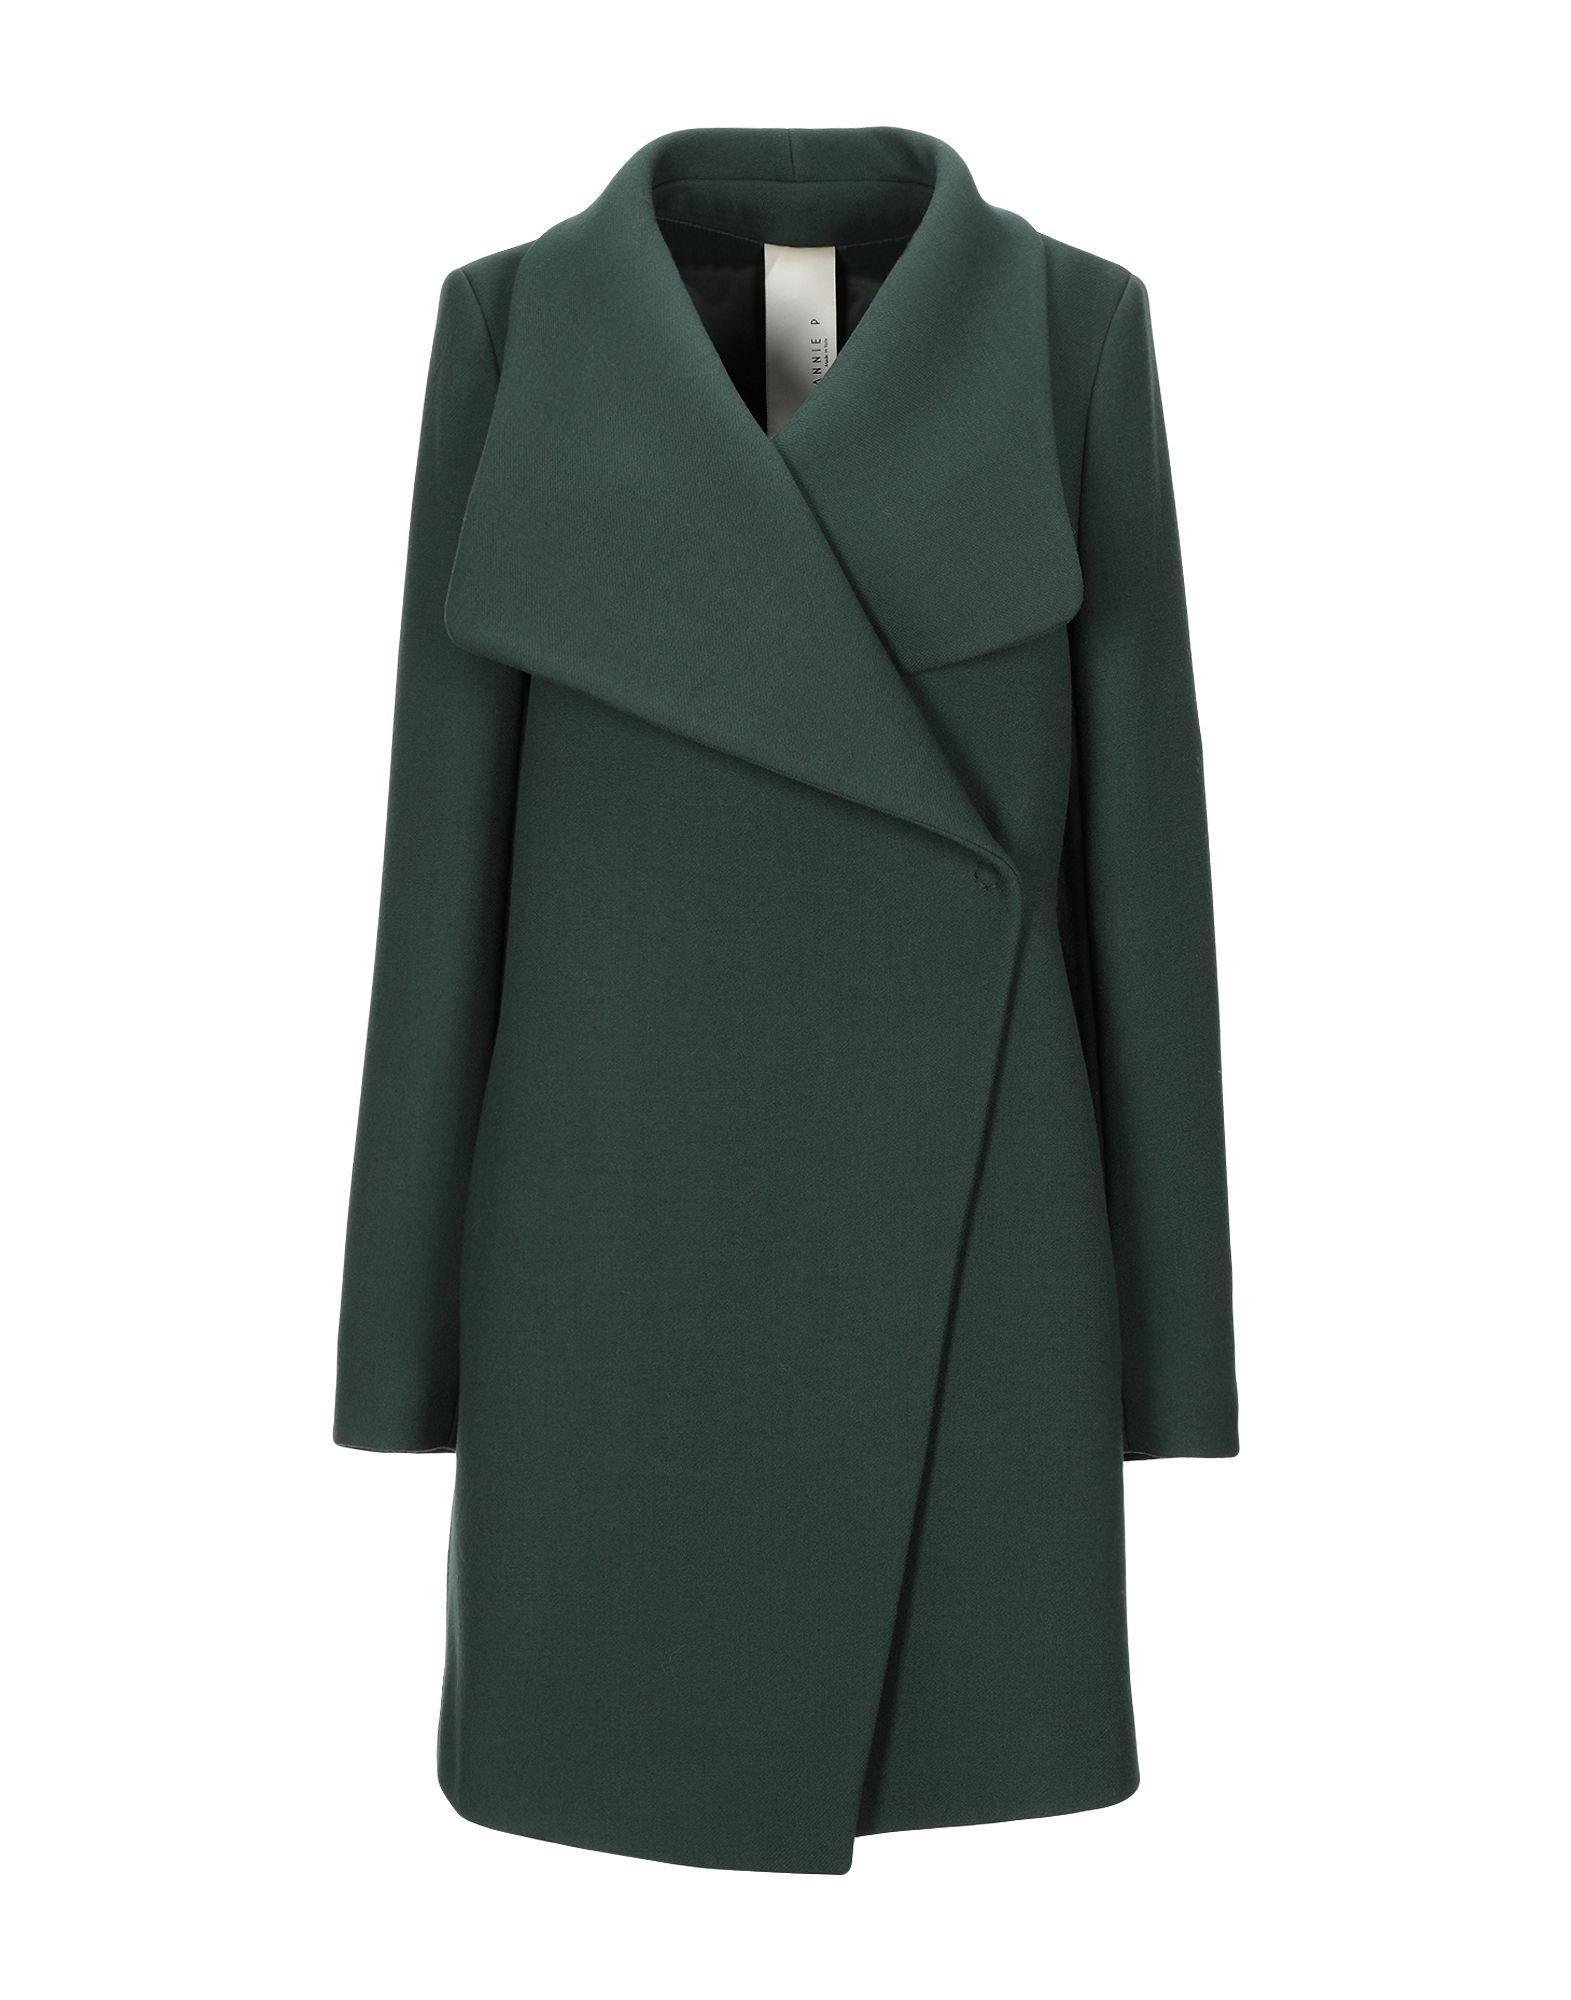 Annie P Flannel Coat in Dark Green (Green) - Lyst